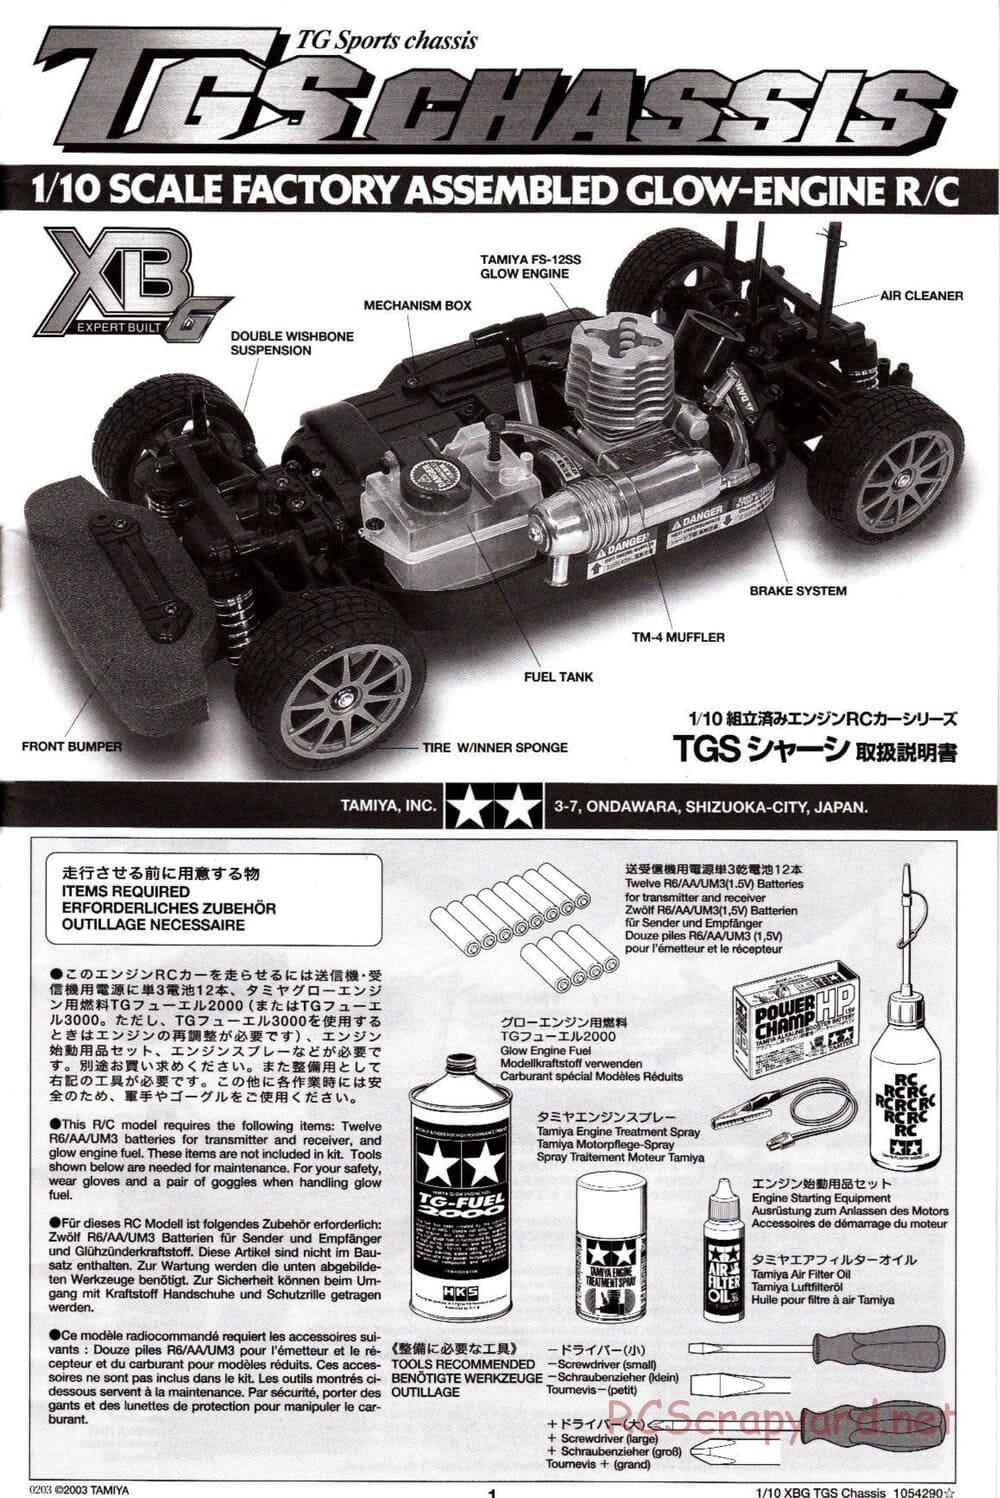 Tamiya - TGS Chassis - Manual - Page 1